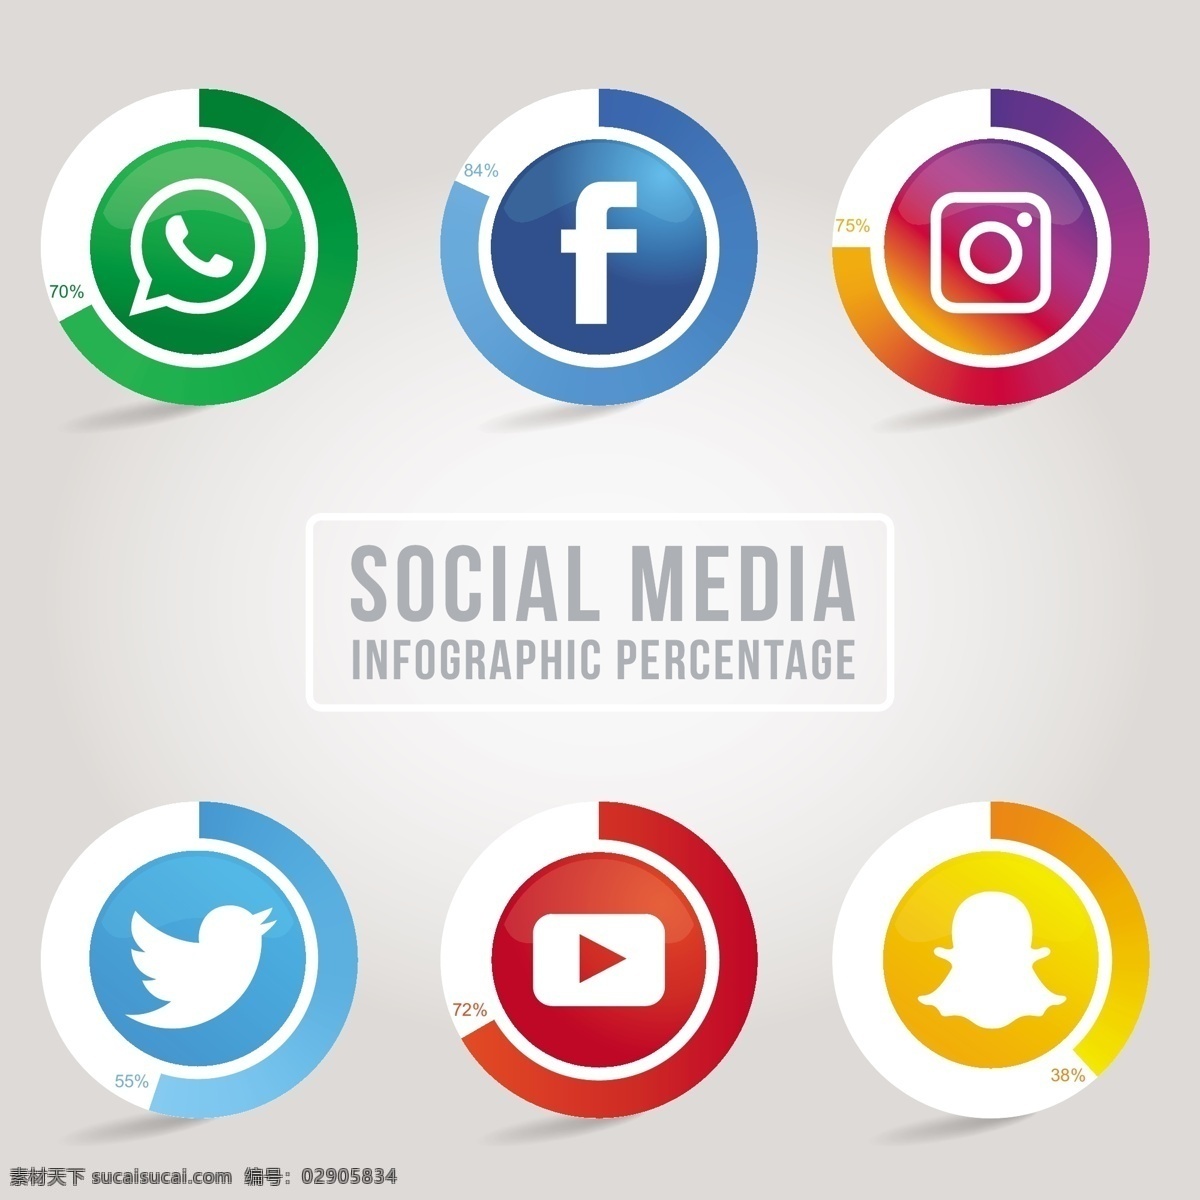 六 社会 网络 图标 图表 资源 业务 模板 脸谱网 图 instagram 营销 图形 互联网 社交 标志 过程 推特 数据 应用程序 信息